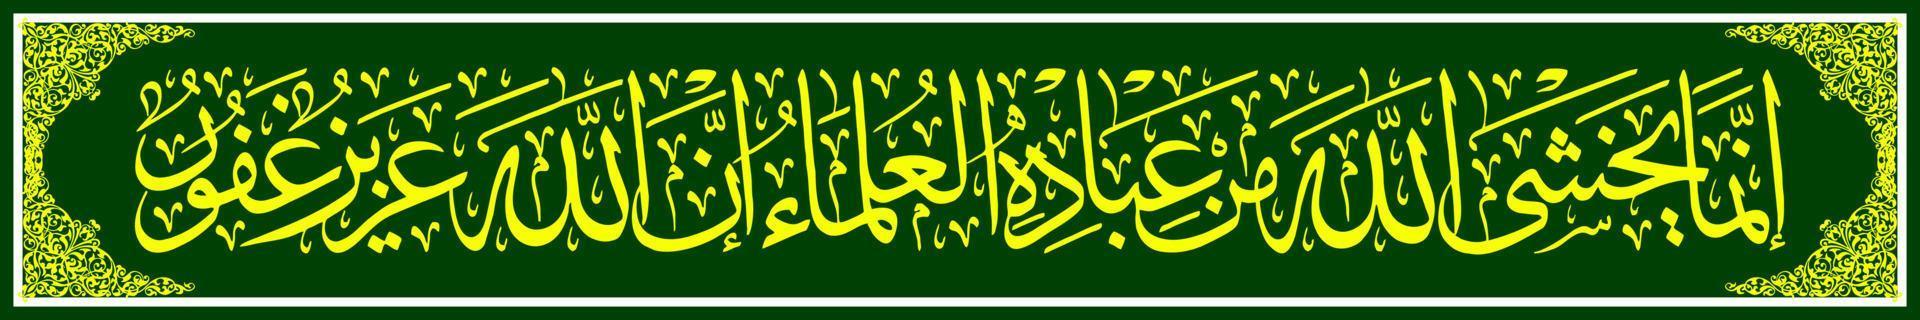 caligrafía árabe, al qur'an surah fatir 48, traducción entre los sirvientes de allah que le temen, son solo los eruditos. de hecho, allah es poderoso, el más indulgente. vector